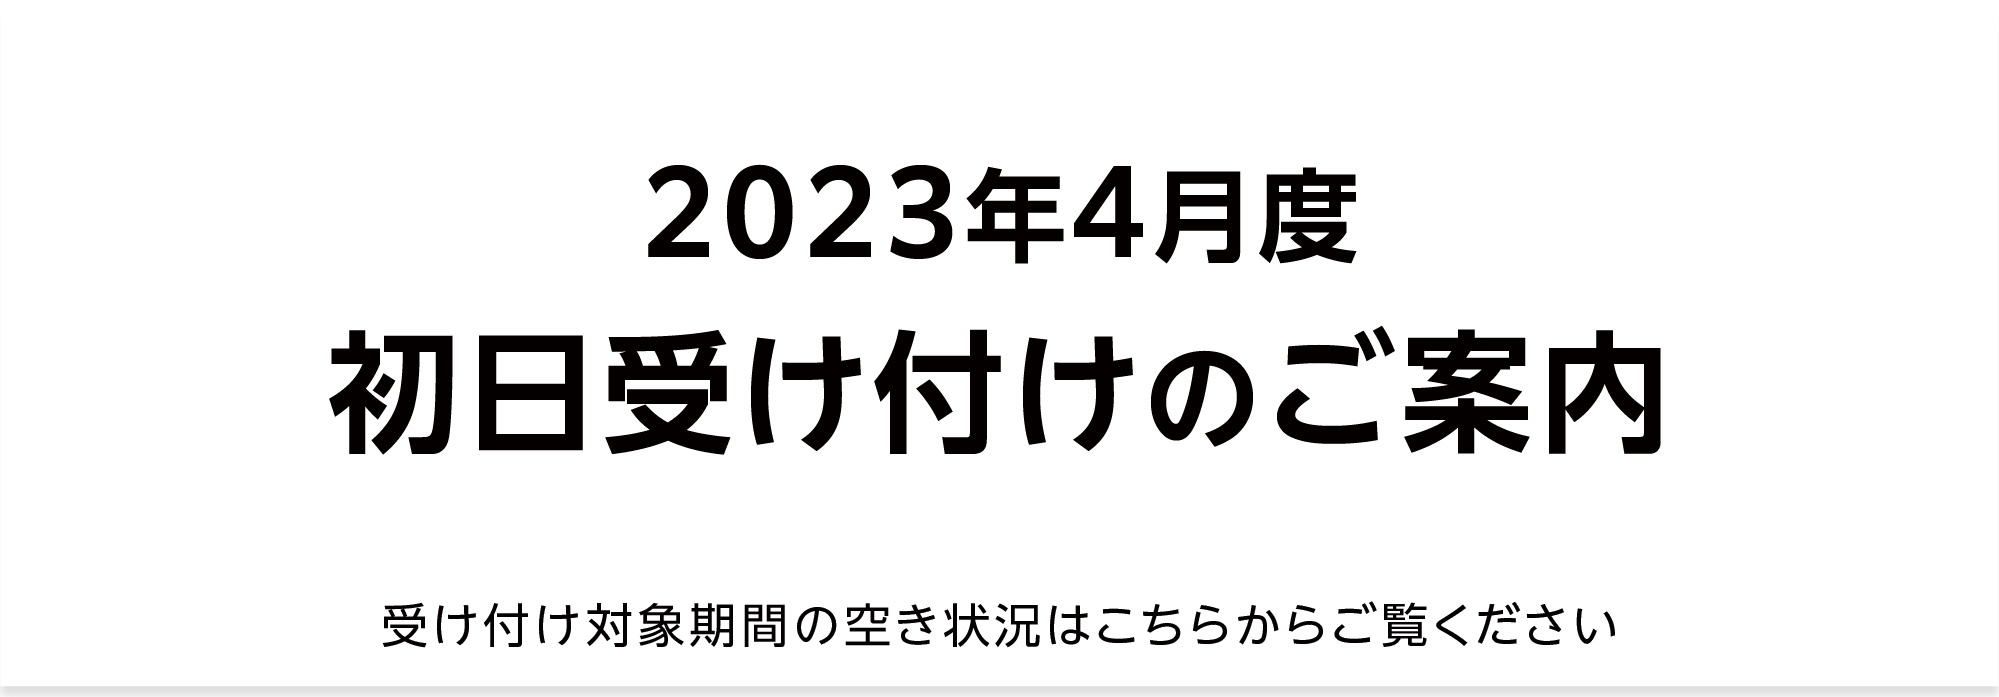 【重要】2023年4月 初日受け付け（空き状況掲載）